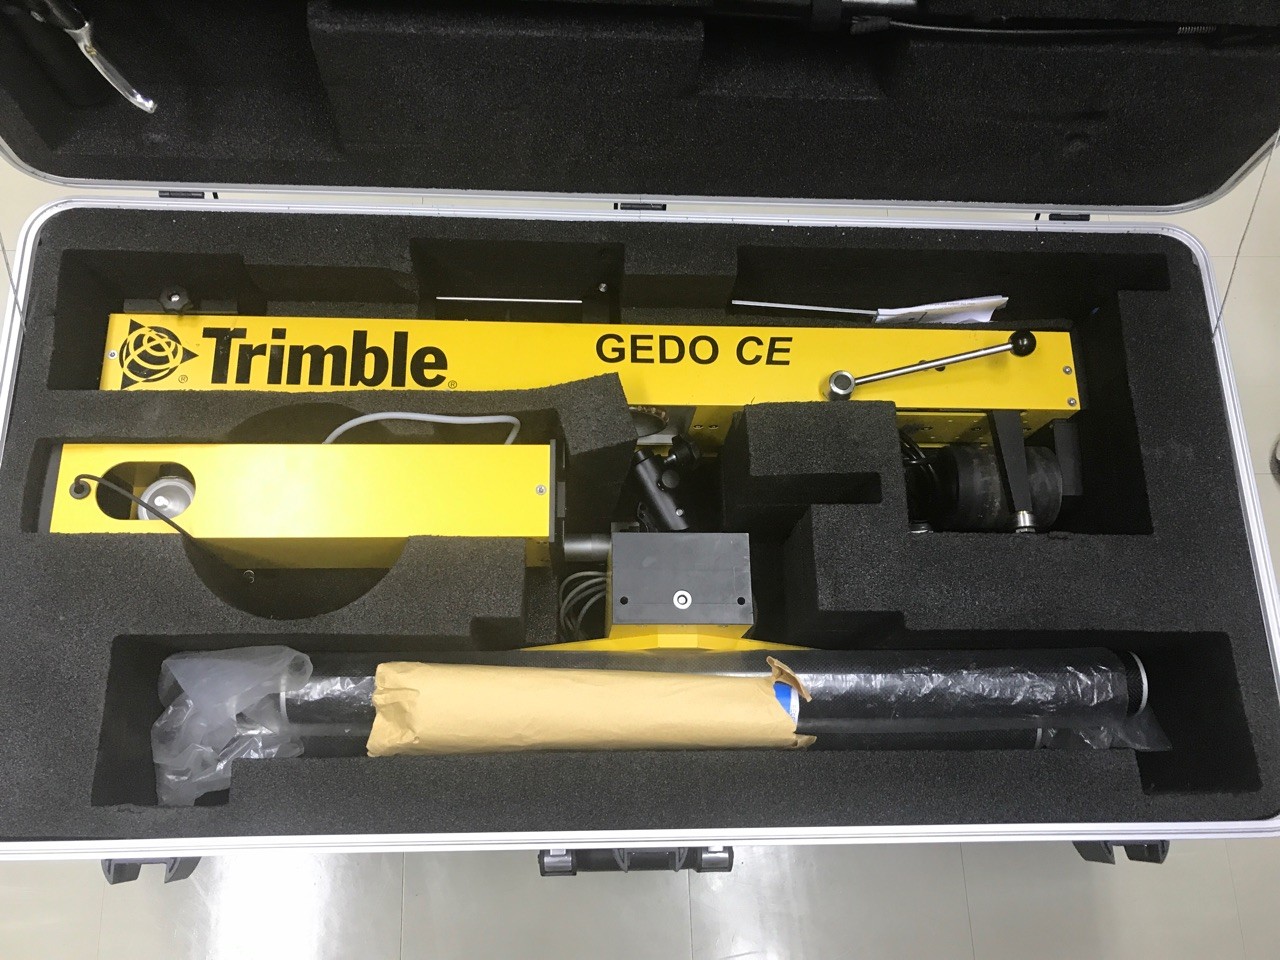 Trimble Gedo軌道測量